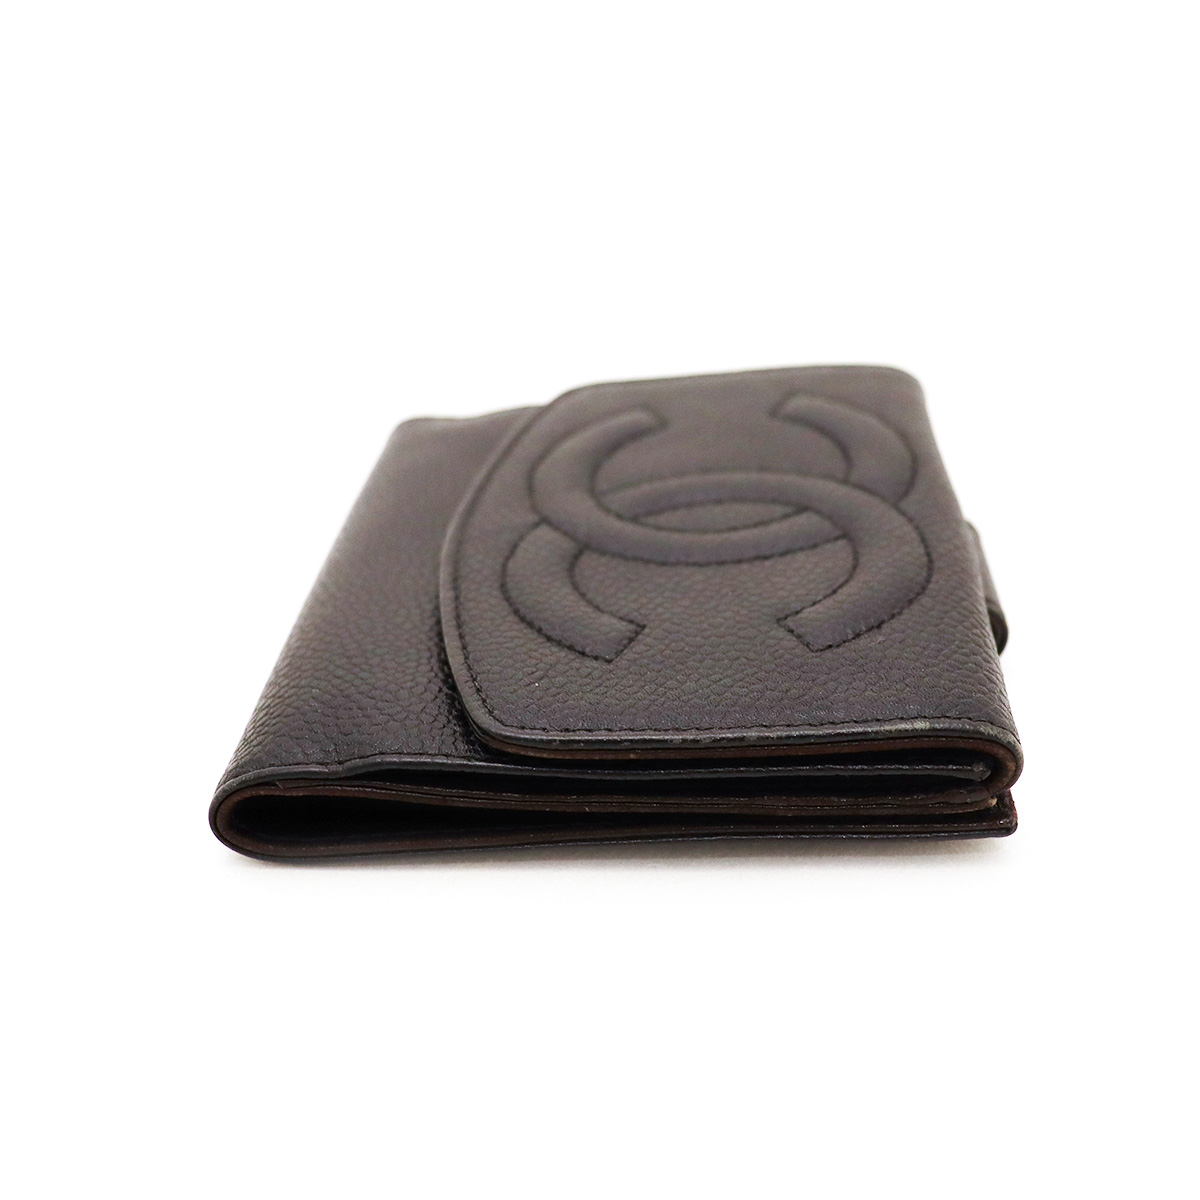 シャネル(CHANEL) 二つ折りWホック財布 キャビアスキン 黒 ブラック 